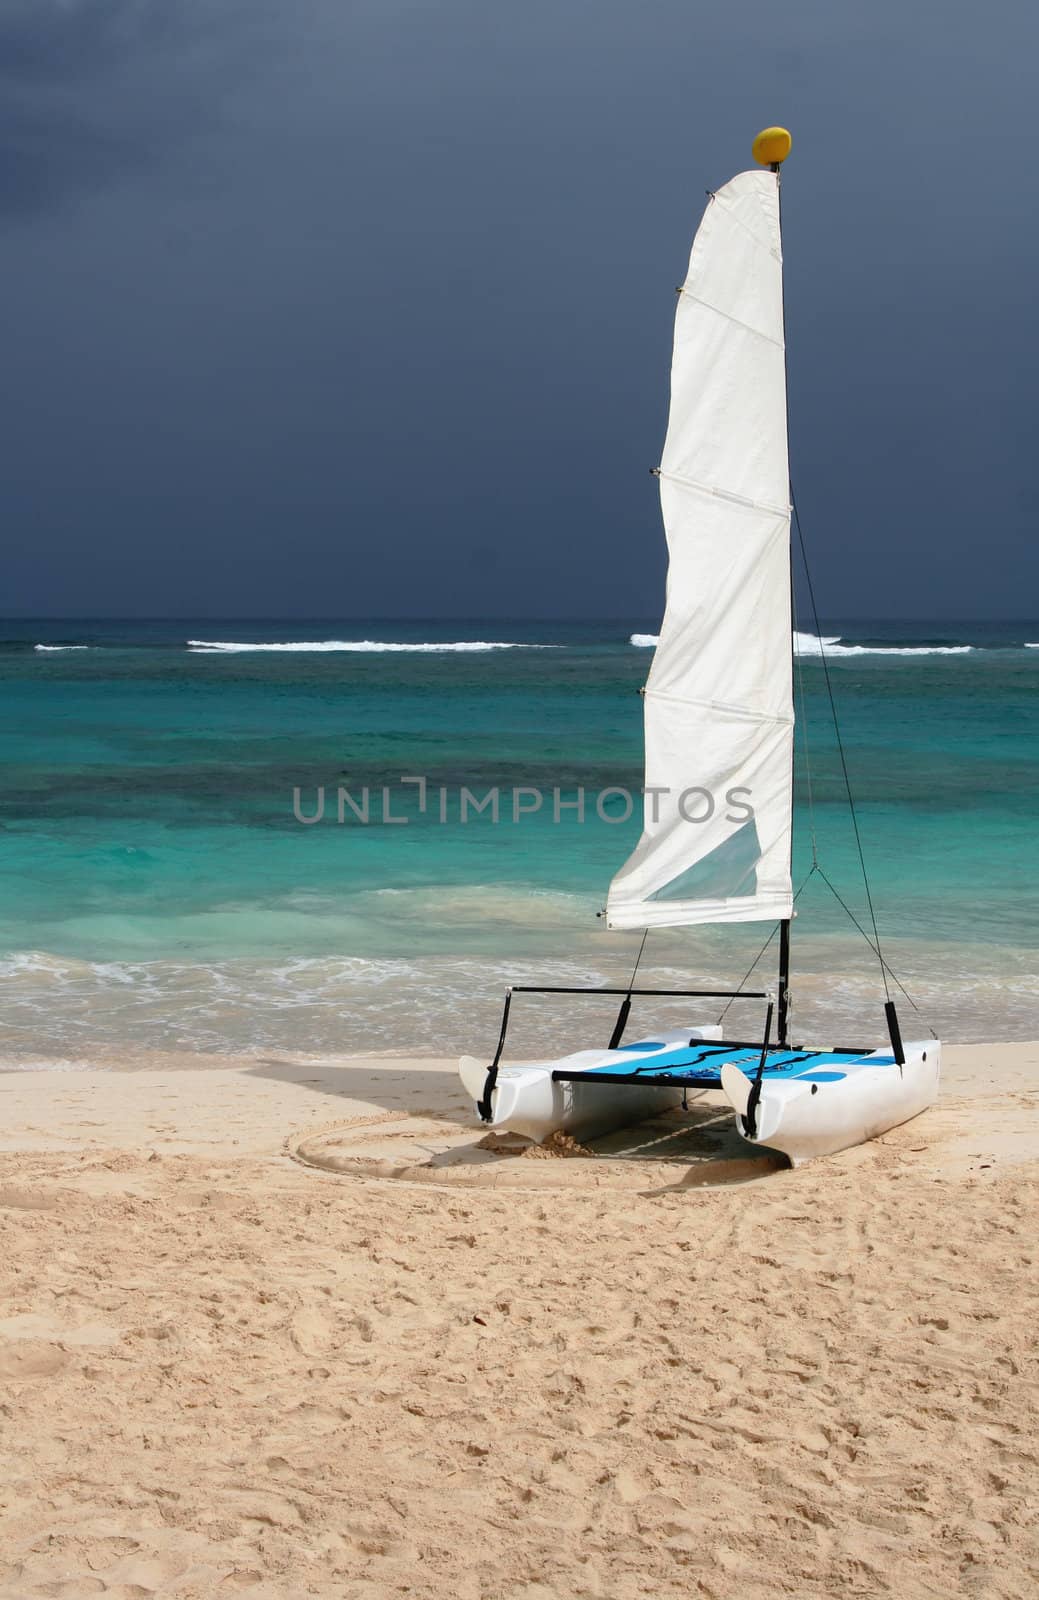 A small tropical catamaran, sitting on the beach.